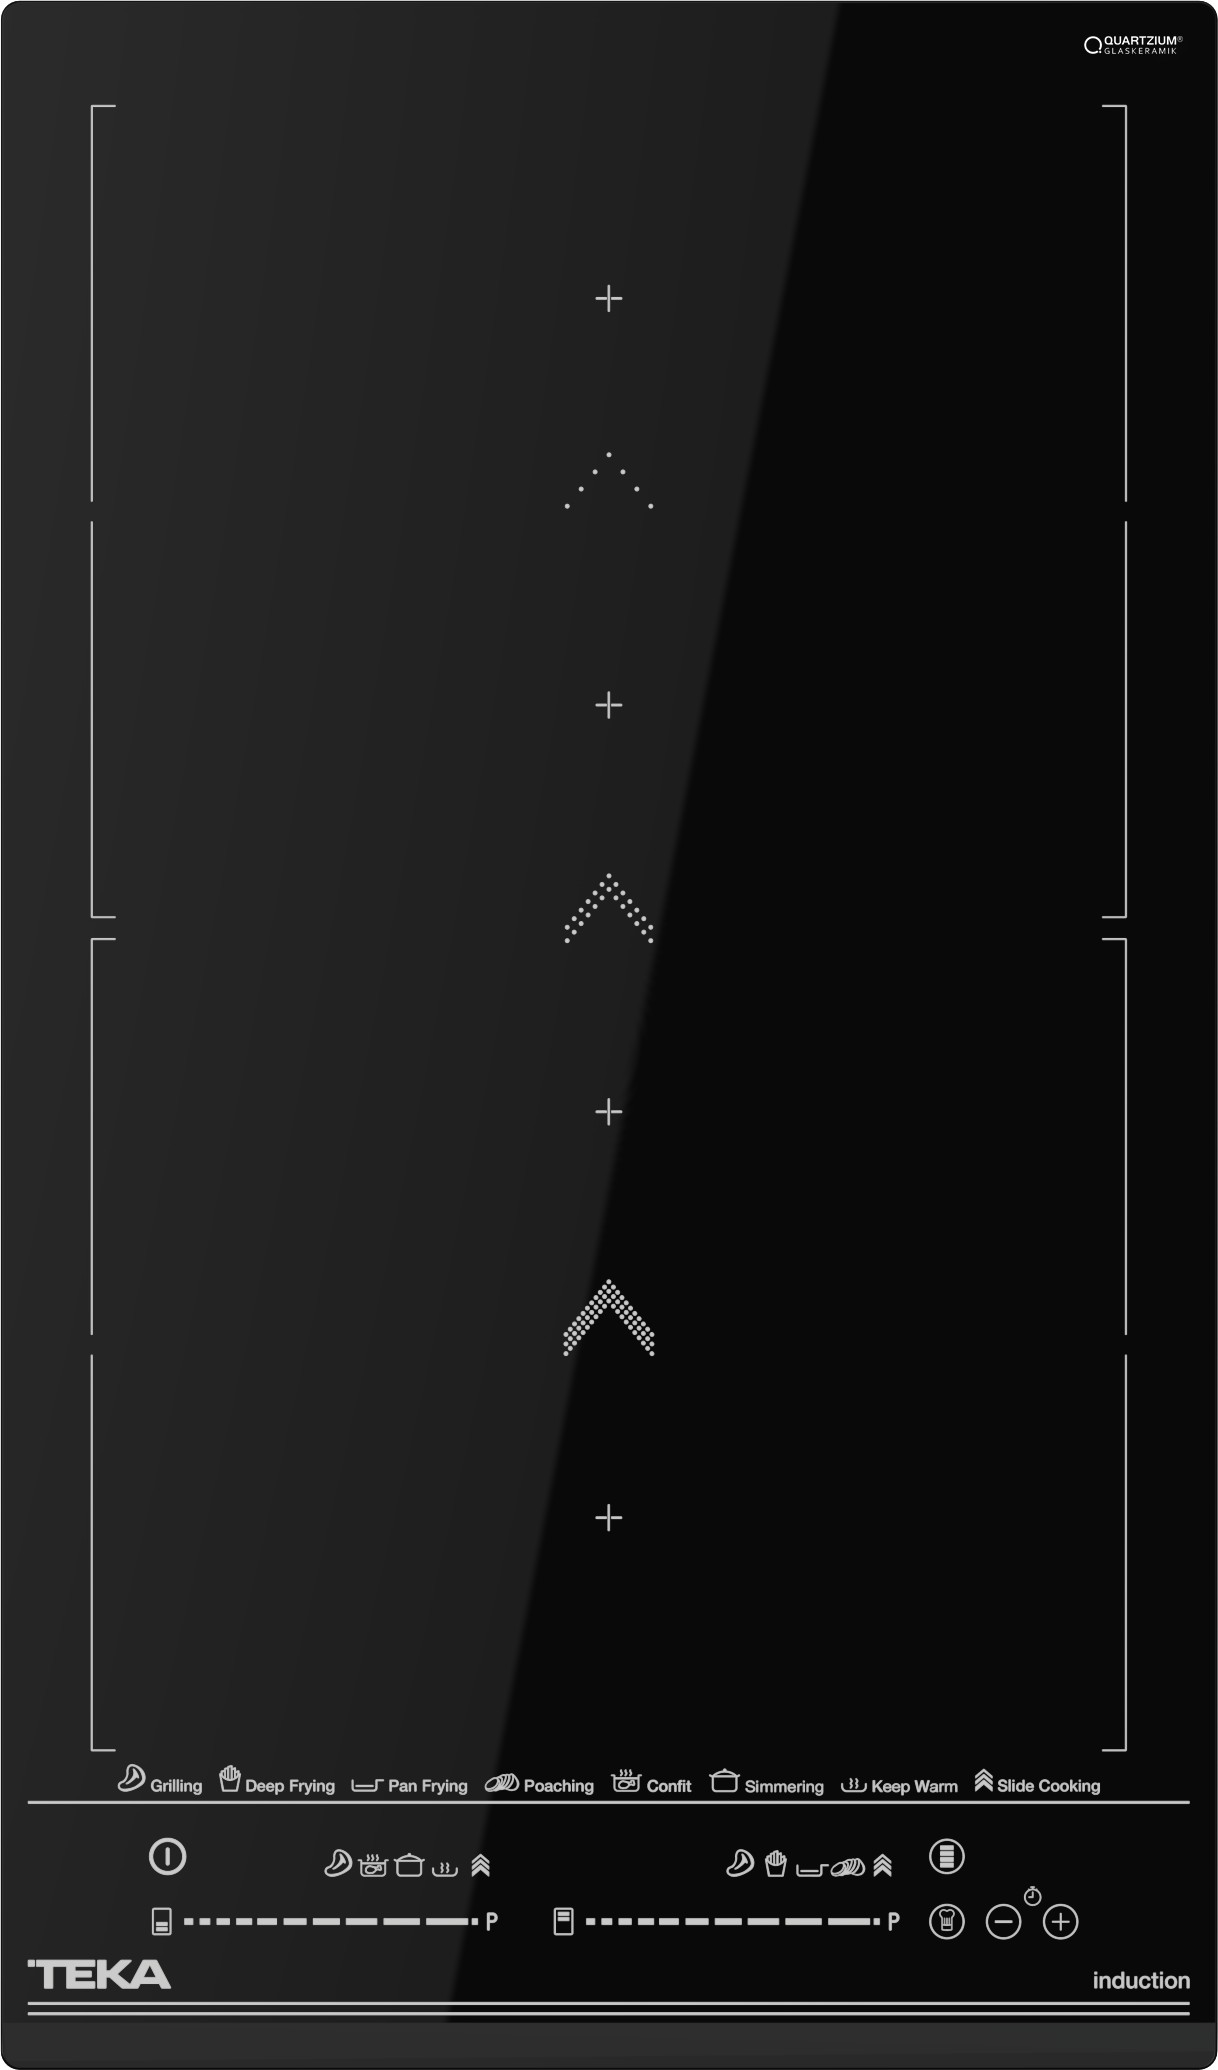 Plita Inductie Incorporabila Teka Izs 34700 30m Flex Slide Cooking Cristal Negru ( 25.IZS 34700.TEK )